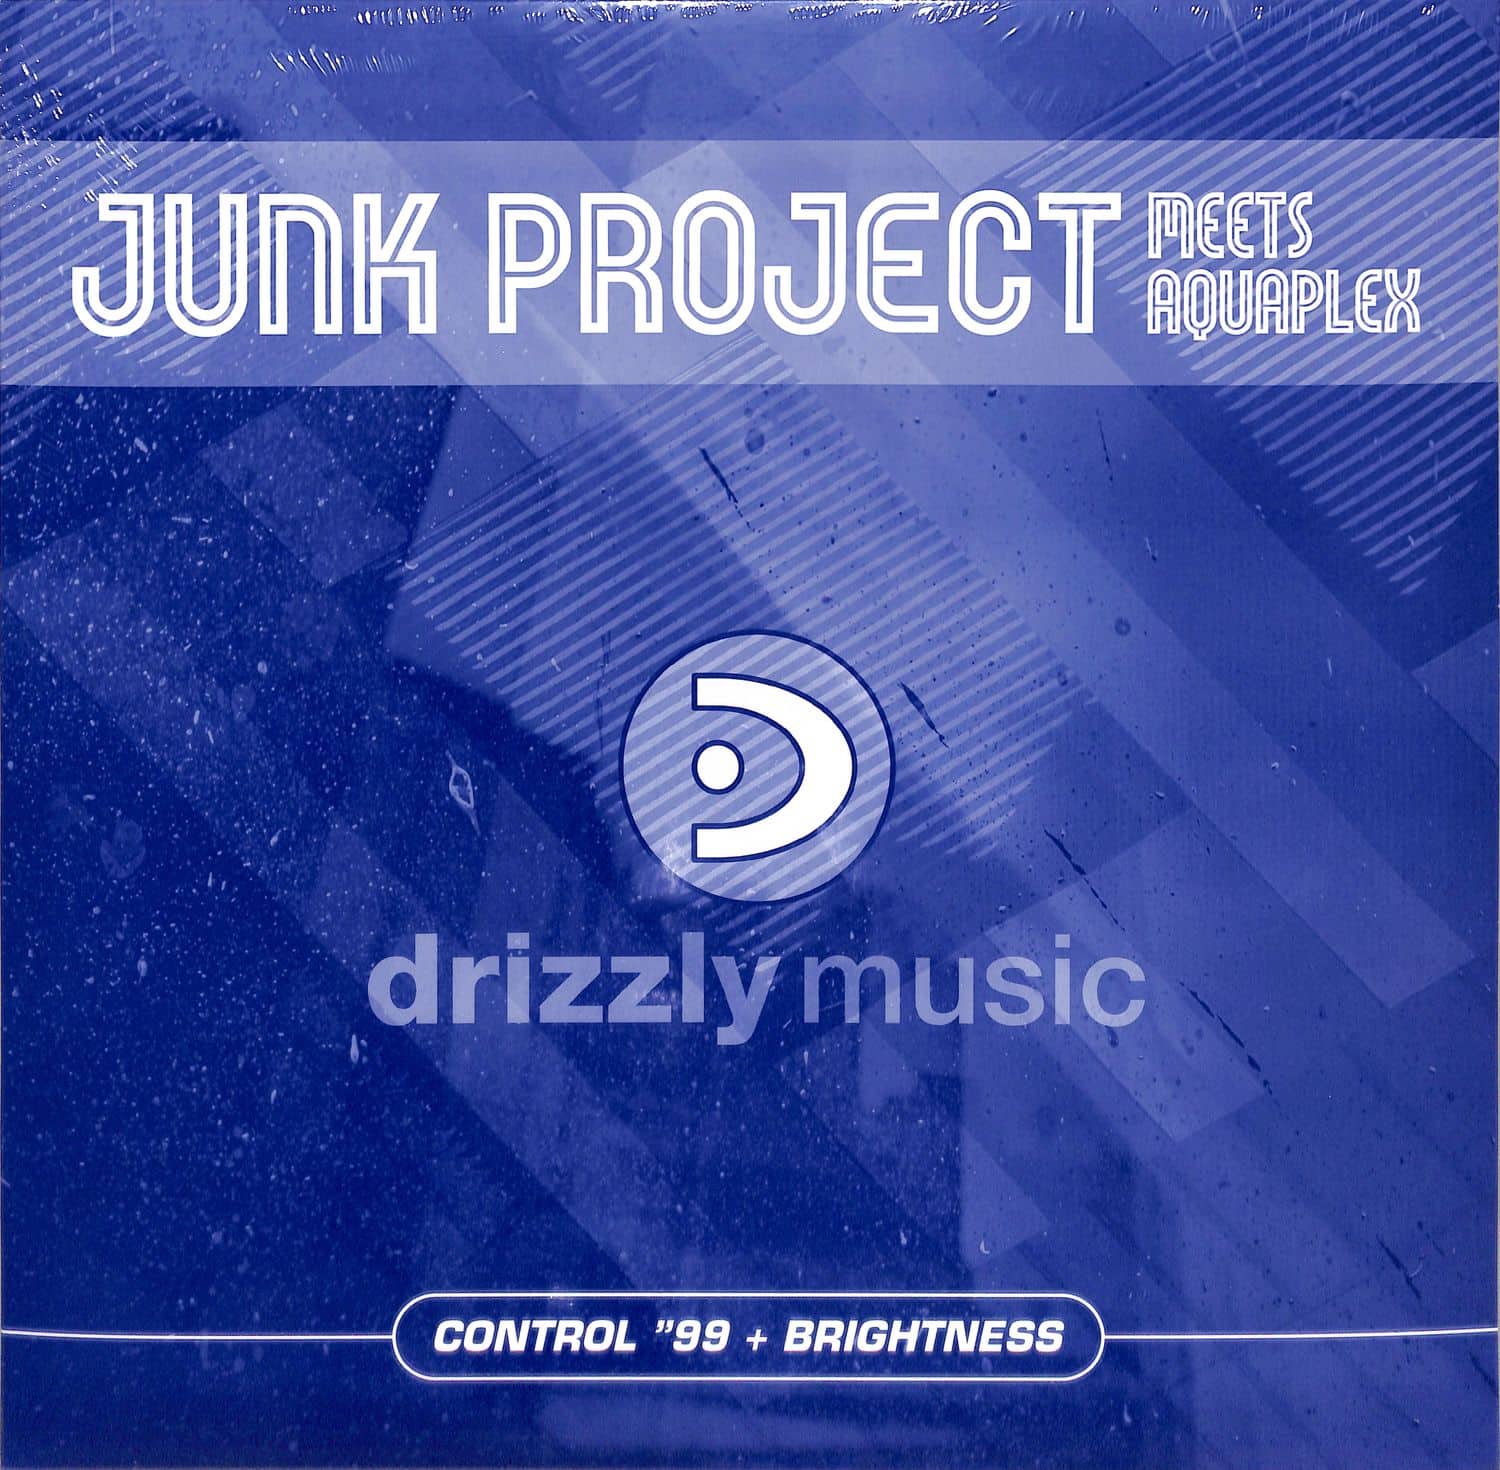 Junk Project meets Aquaplex - CONTROL 99 / BRIGHTNESS